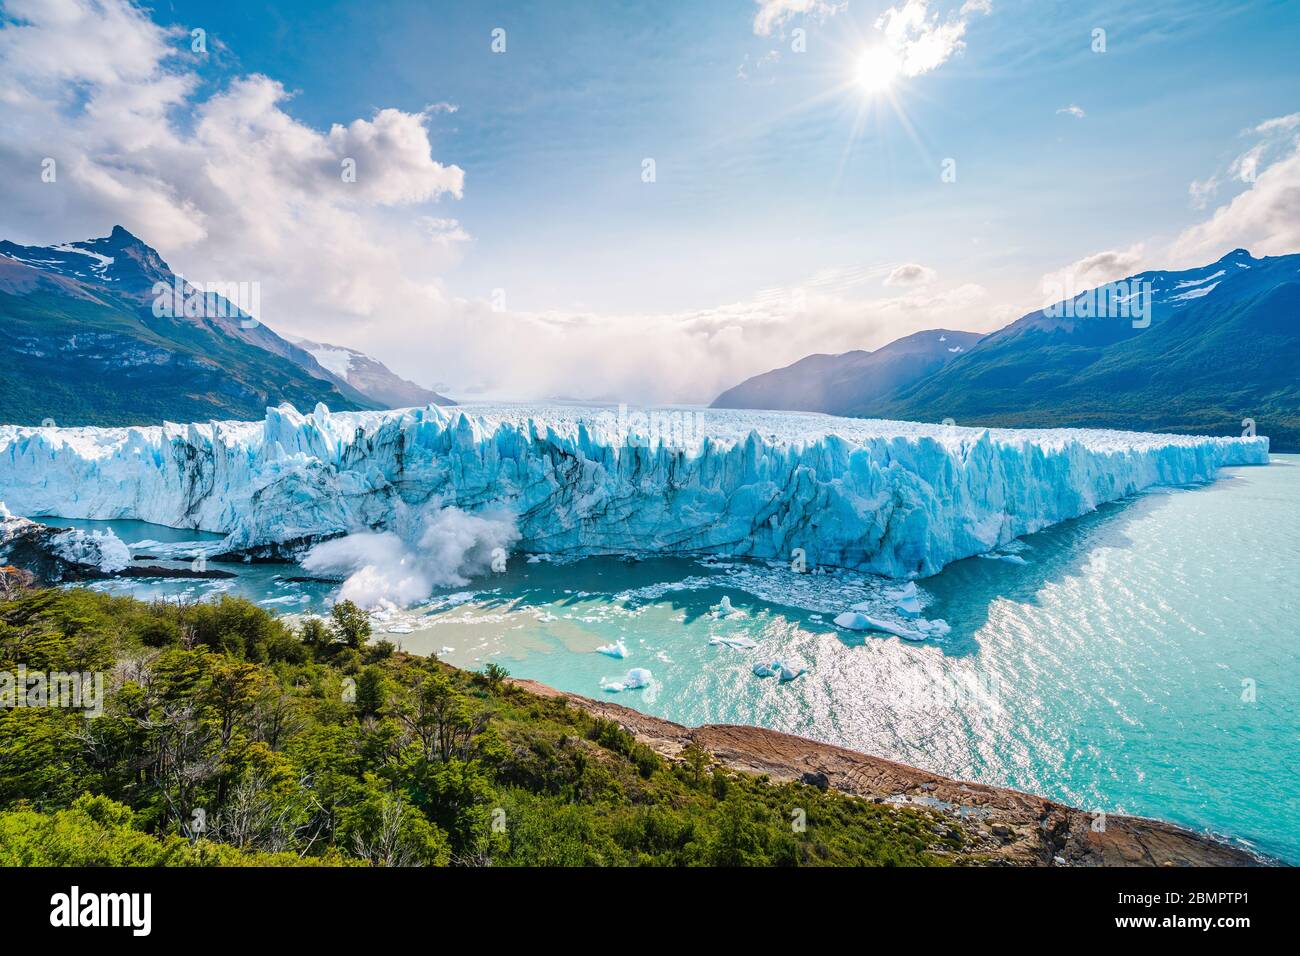 Hielo colapsando en el agua en el Glaciar Perito Moreno en el Parque Nacional los Glaciares cerca de el Calafate, Patagonia Argentina, Sudamérica. Foto de stock